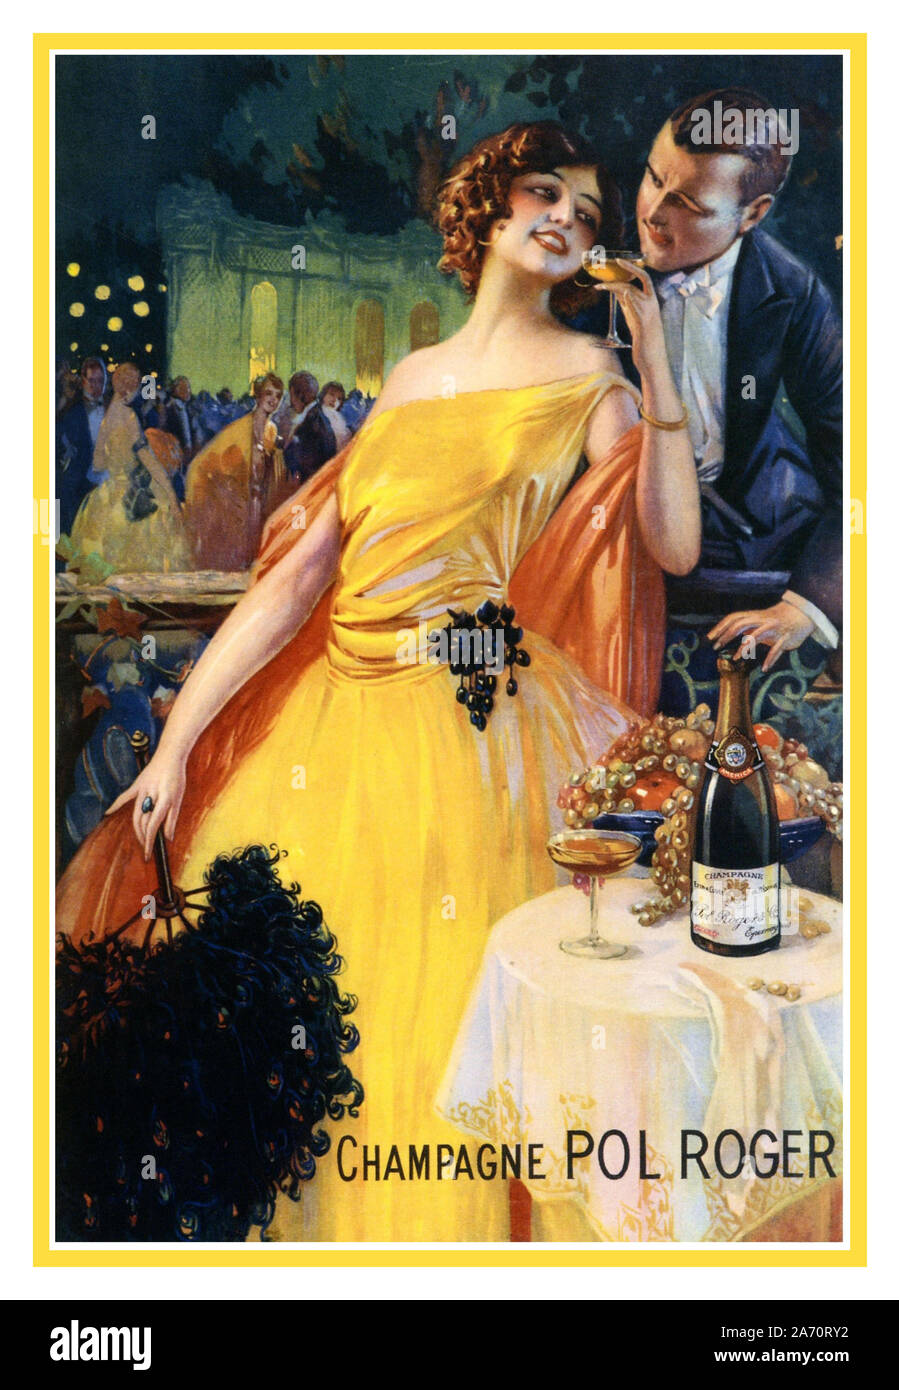 Vintage Champagne Pol Roger cartel publicitario francés de 1920 por Gaspar Camps ilustrando un lujoso Francia Foto de stock